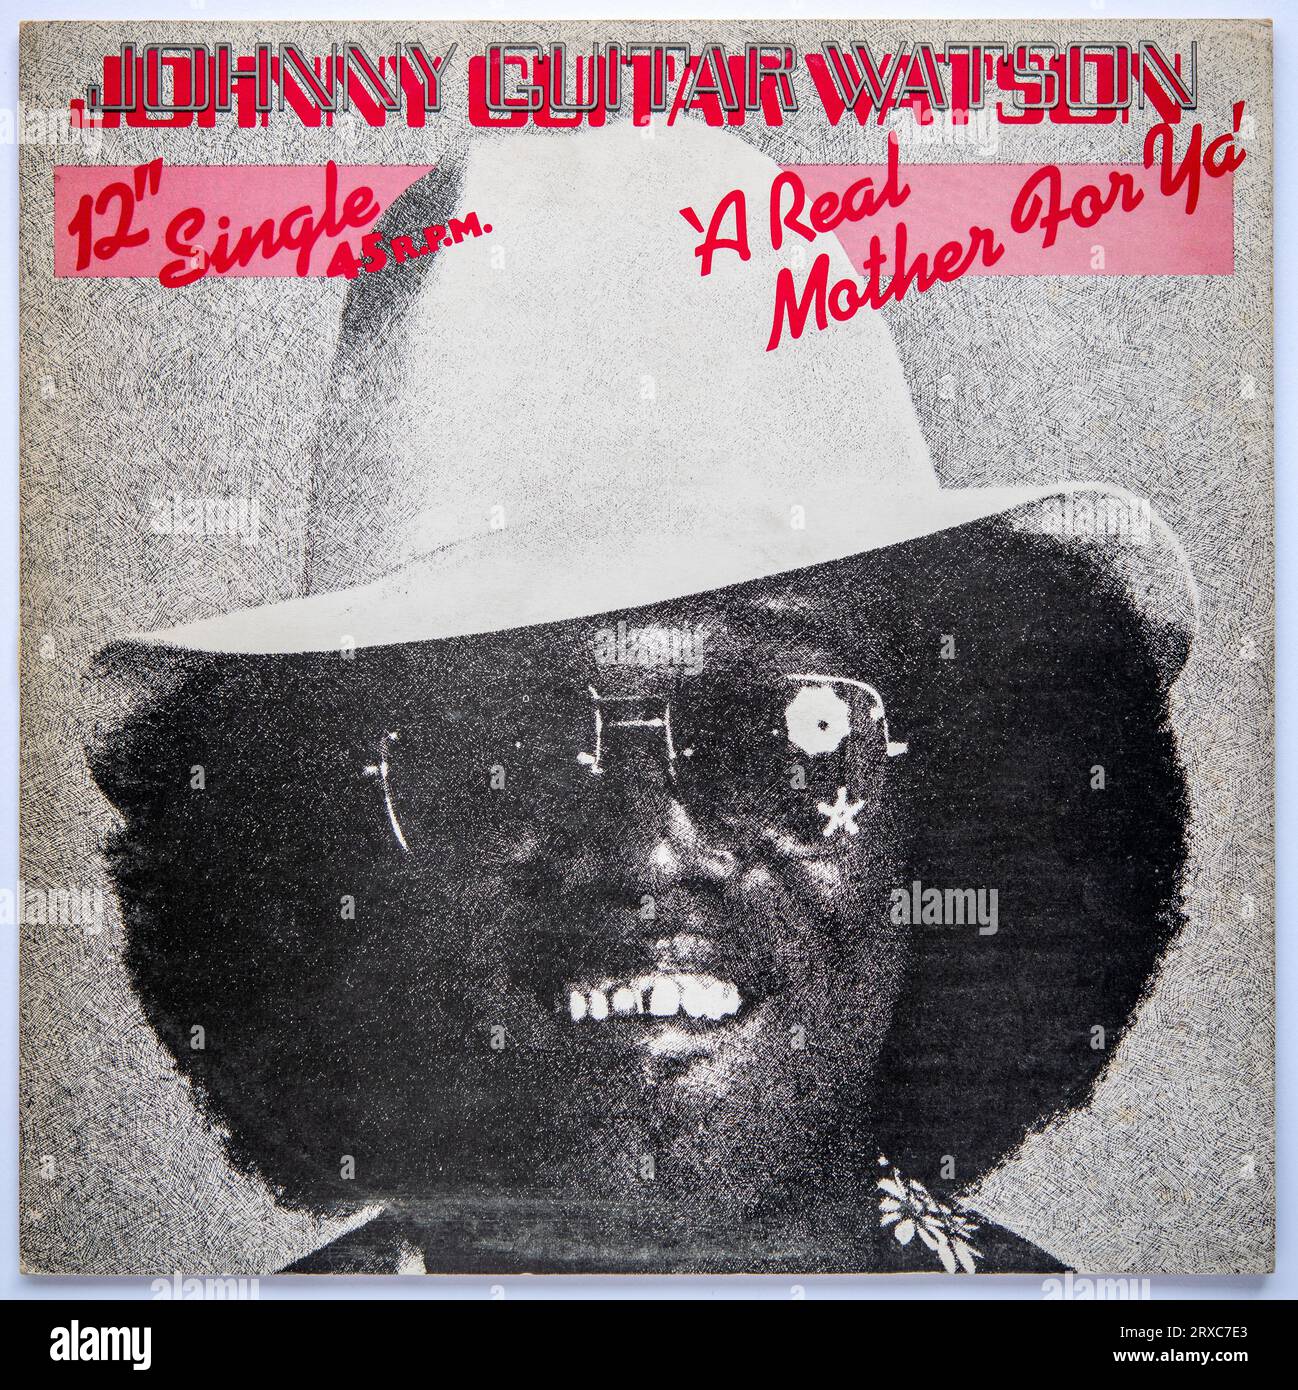 Das Cover der 12-Zoll-Single-Version von A Real Mother for Ya von Johnny Guitar Watson, die 1977 veröffentlicht wurde Stockfoto